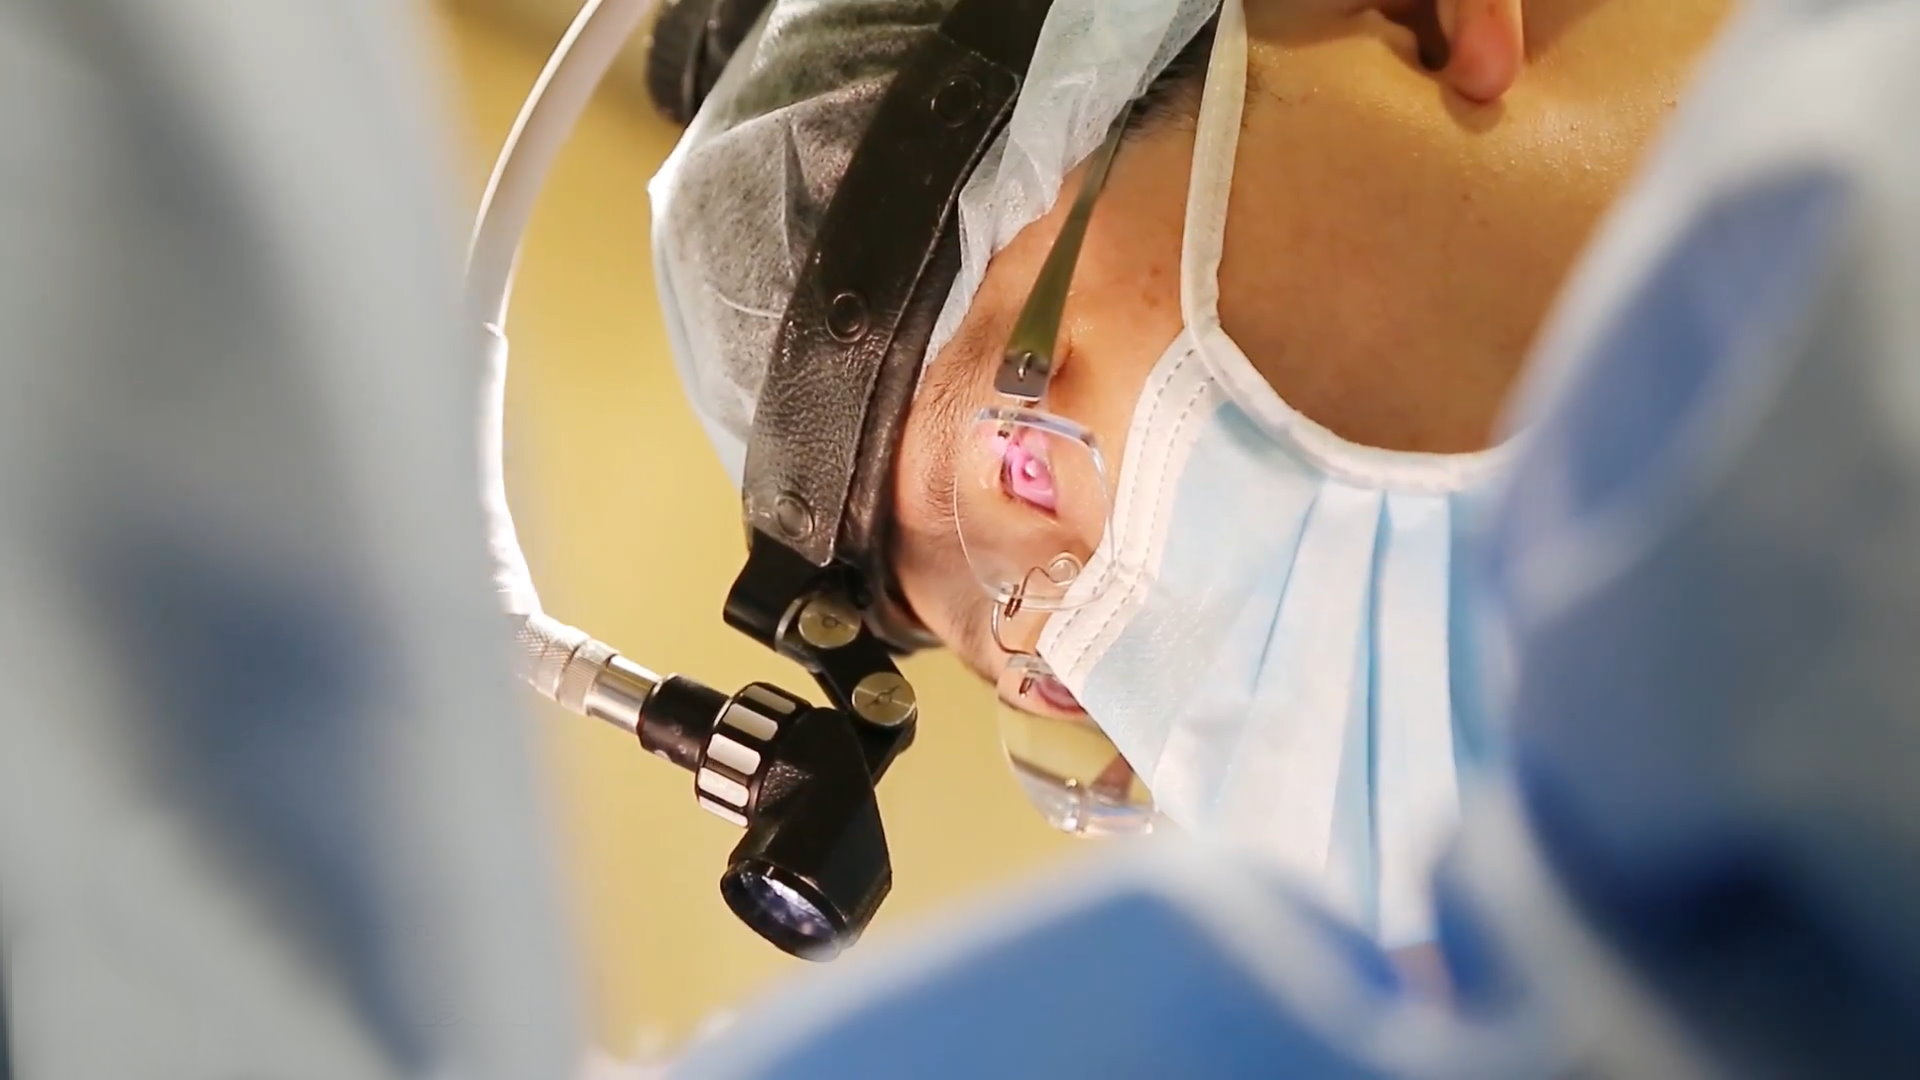 高雄隆鼻整形手術整形外科專科醫師-許英哲醫師